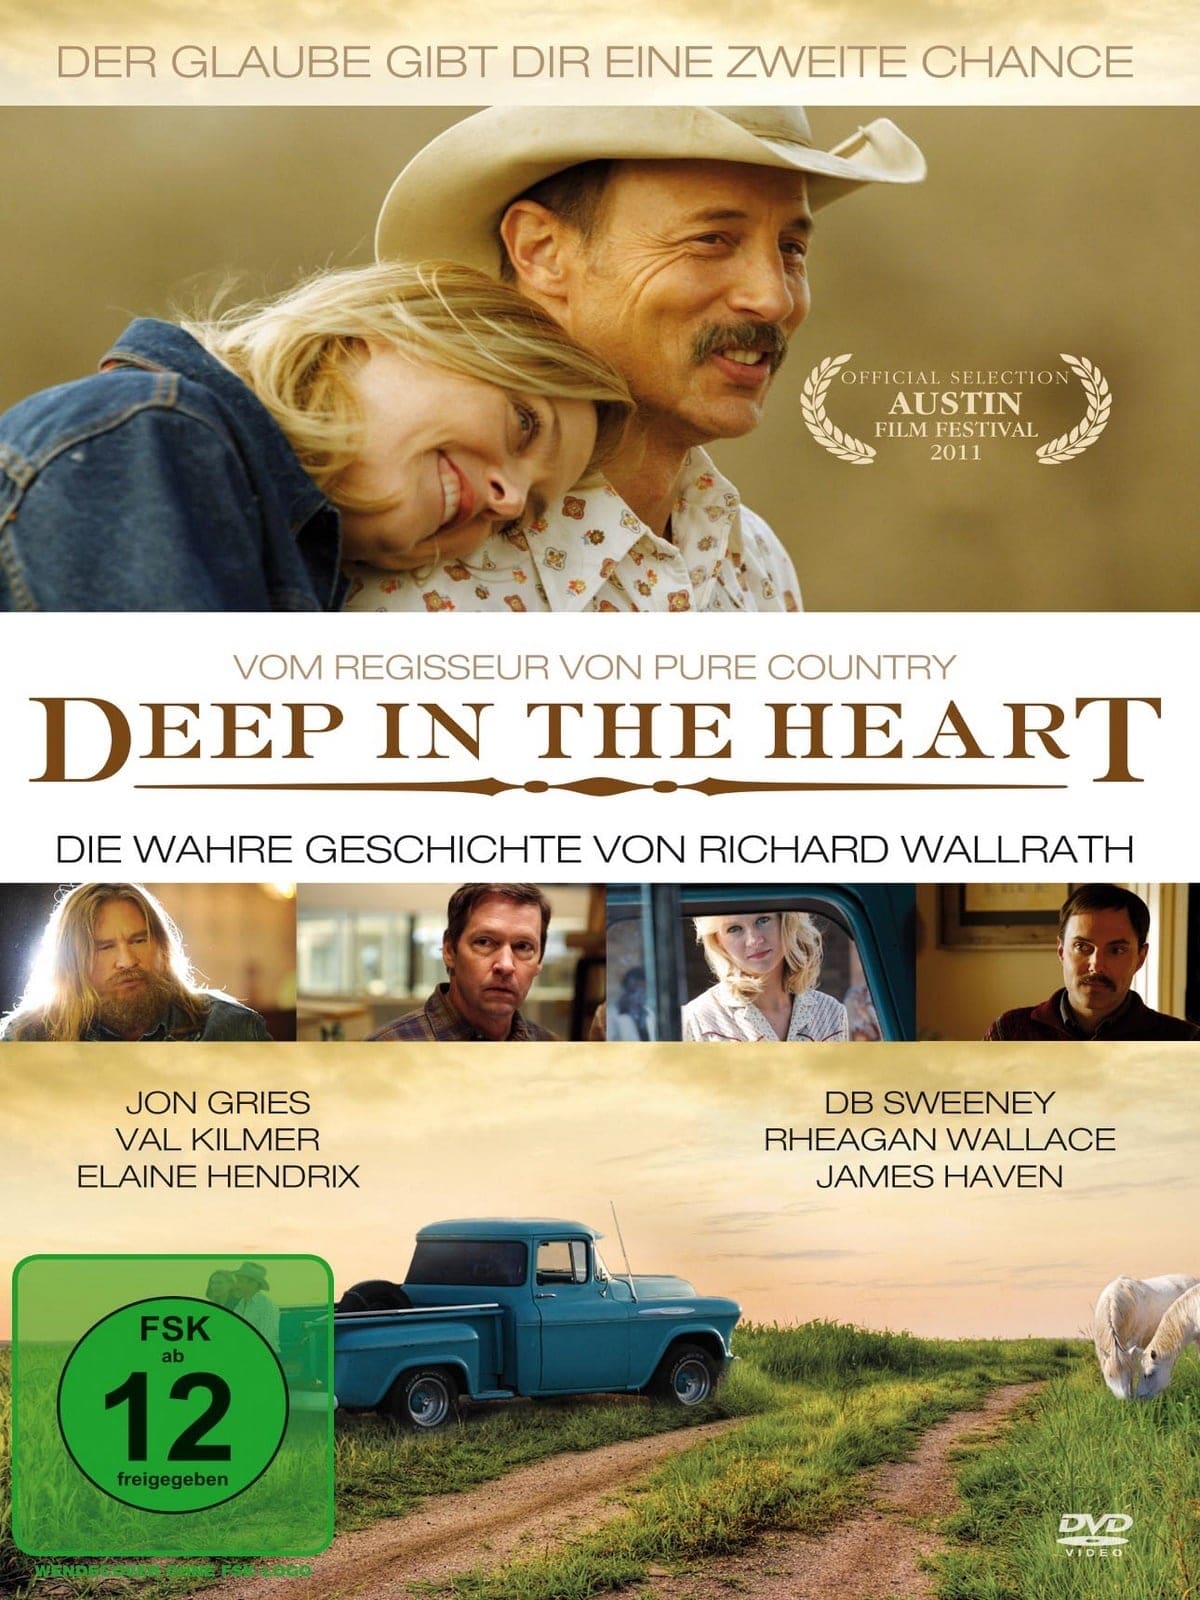 Plakat von "Deep in the Heart"